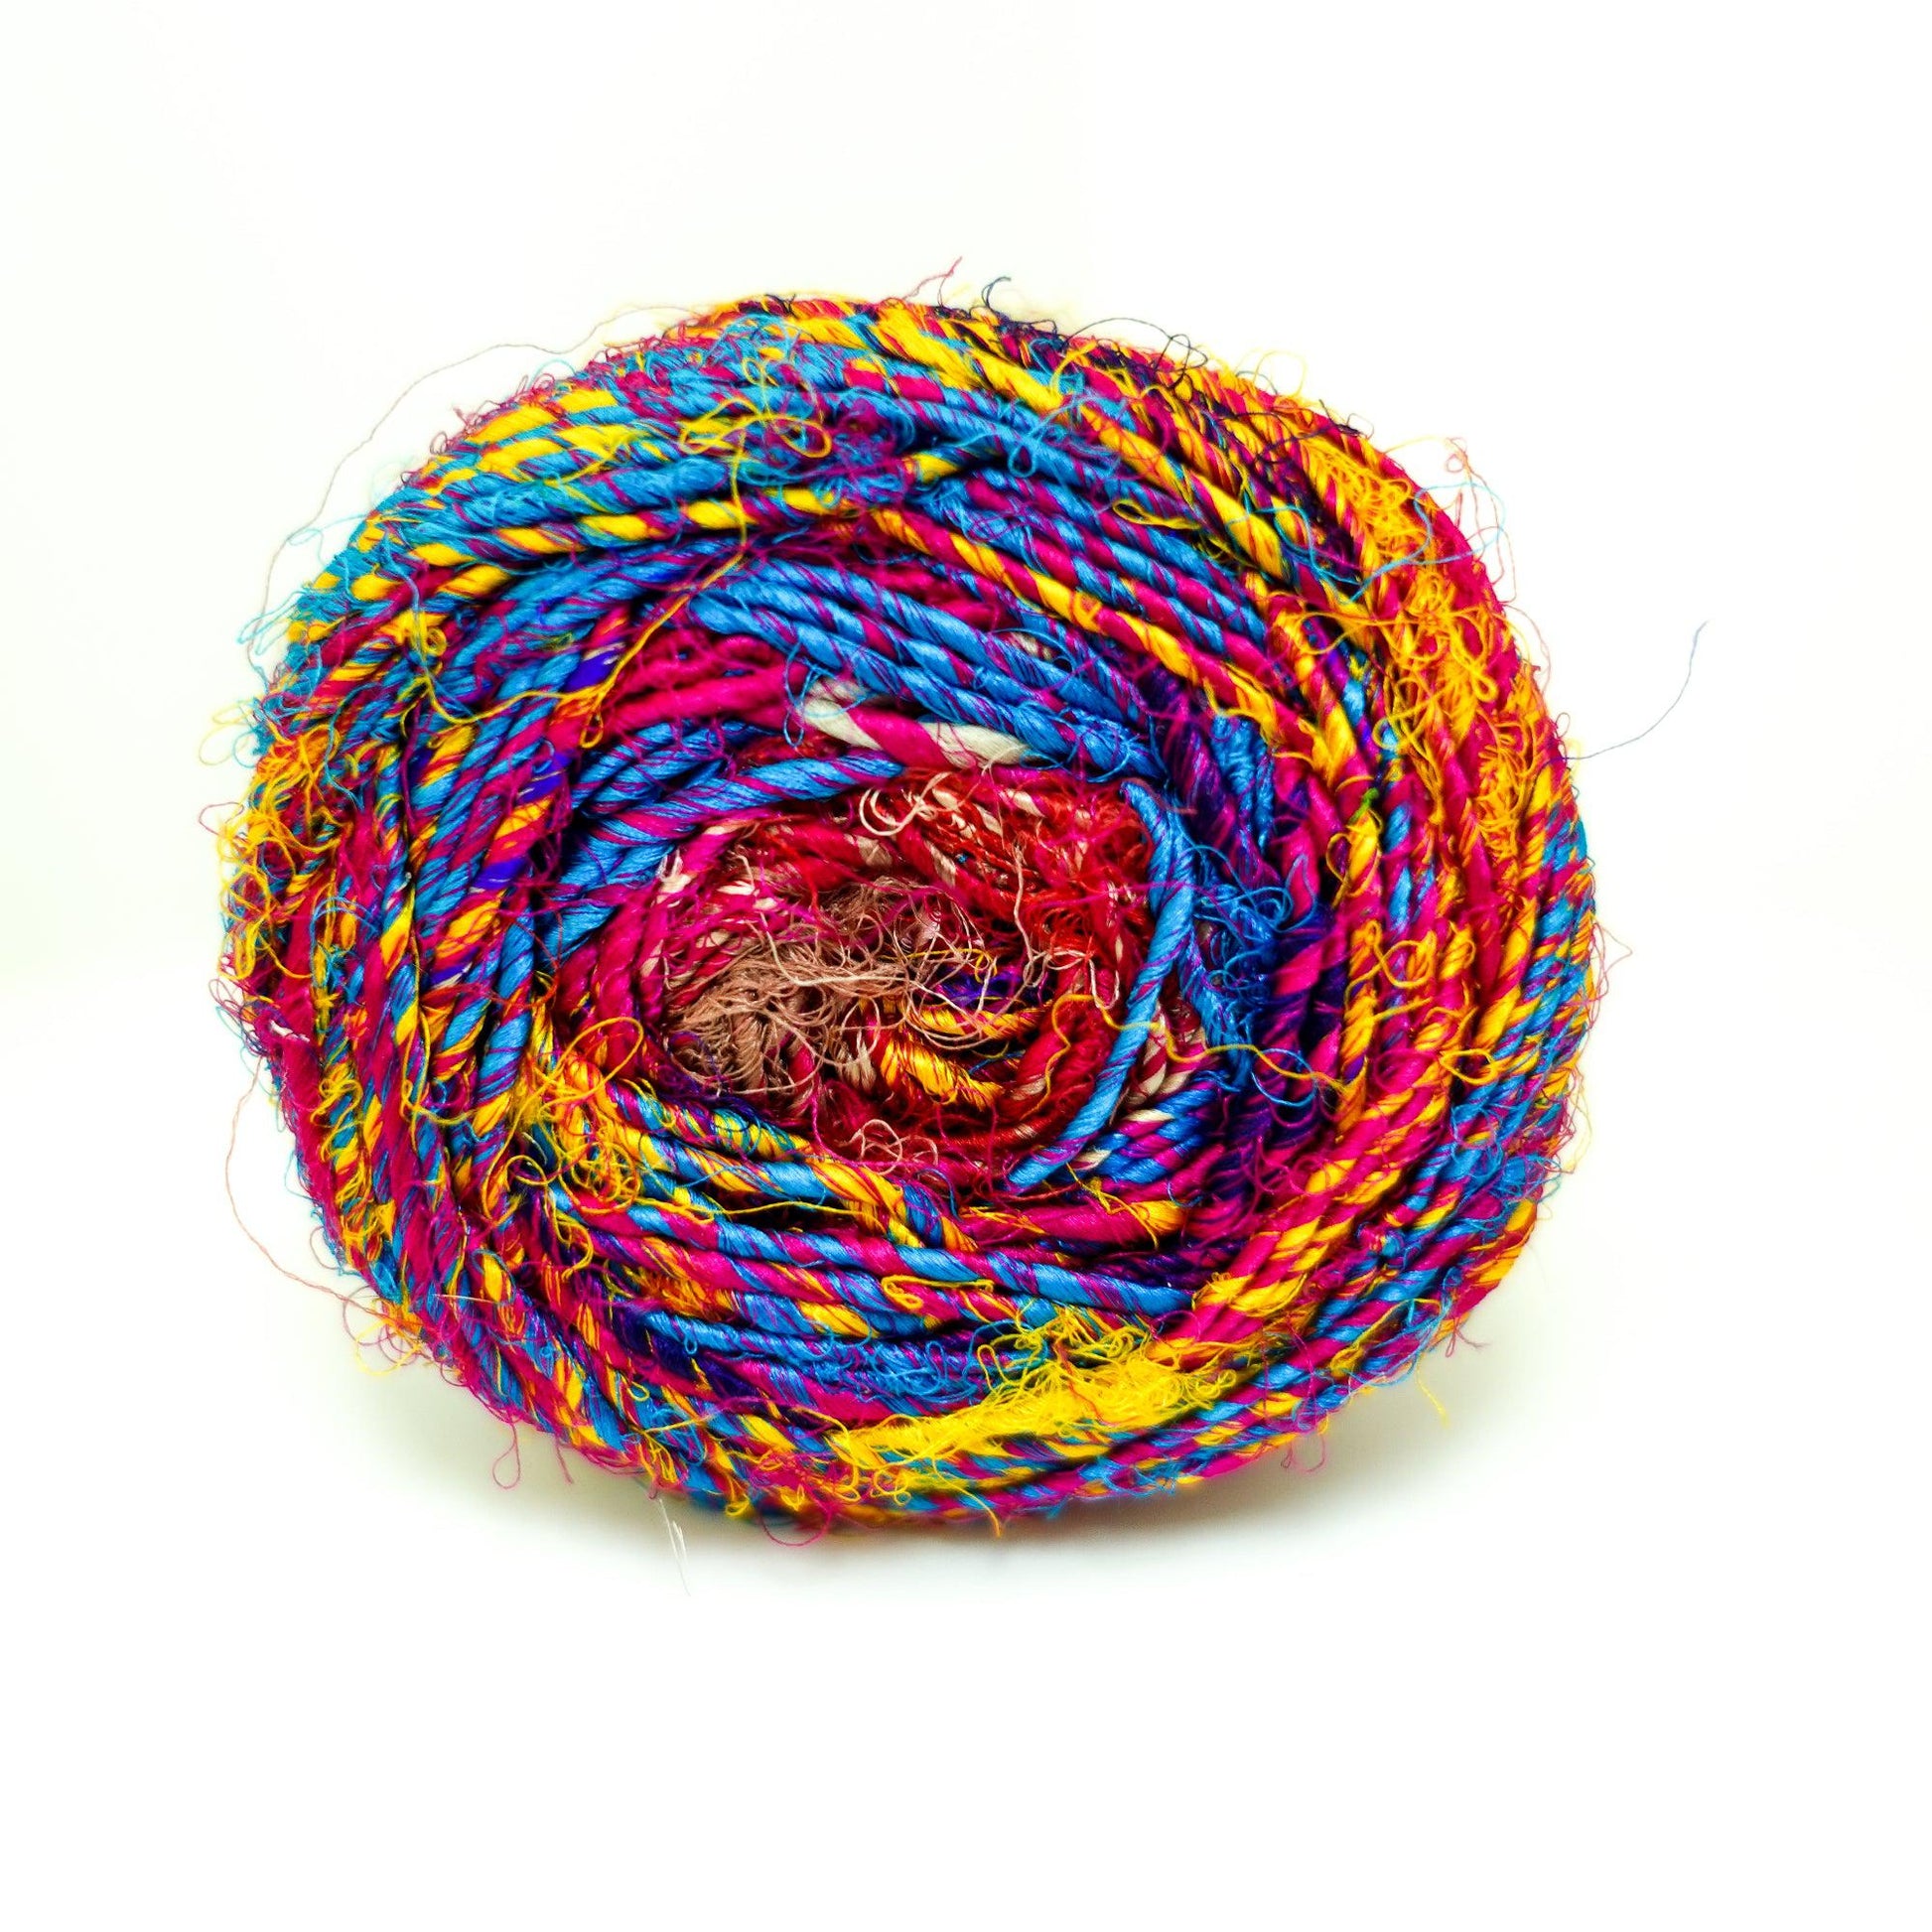 Revolution Fibers Multi-Color Recycled Sari Silk Yarn, Handspun Sari Fabric Scrap Yarn Cakes | 100 Grams per Ball - Textile Indie 